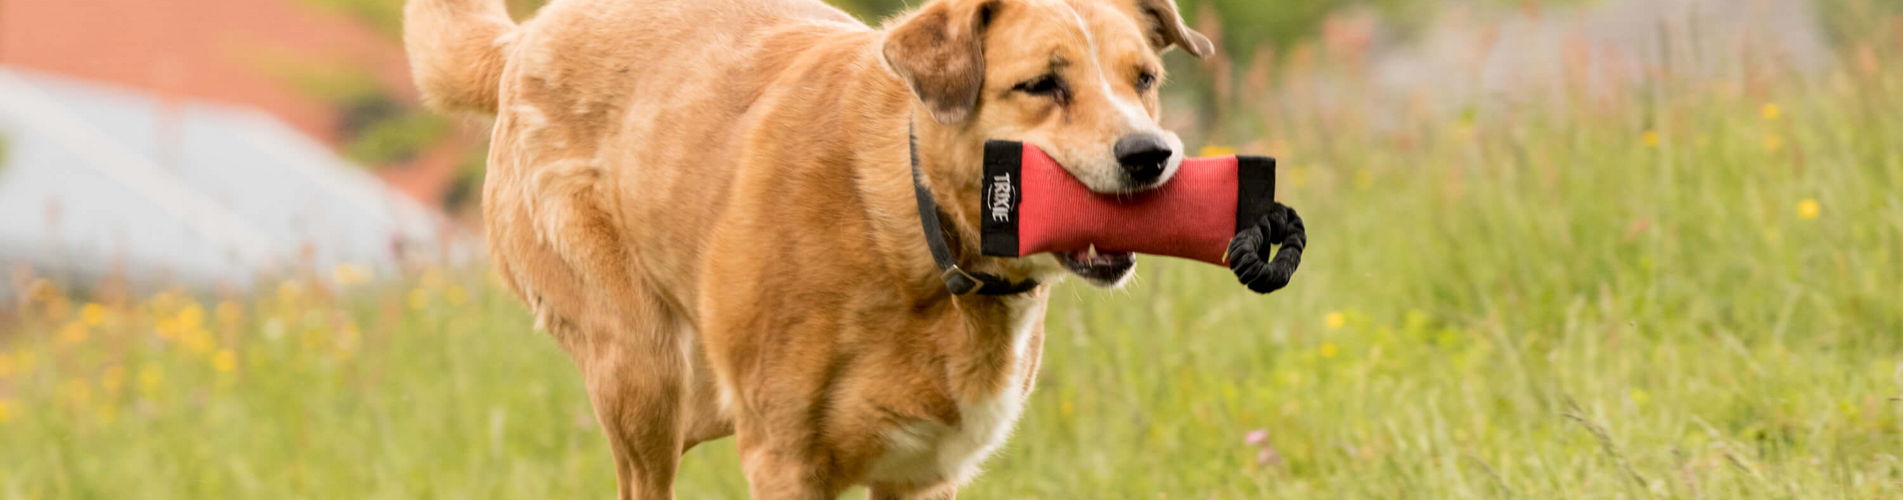 Hund mit Dammy im Mund